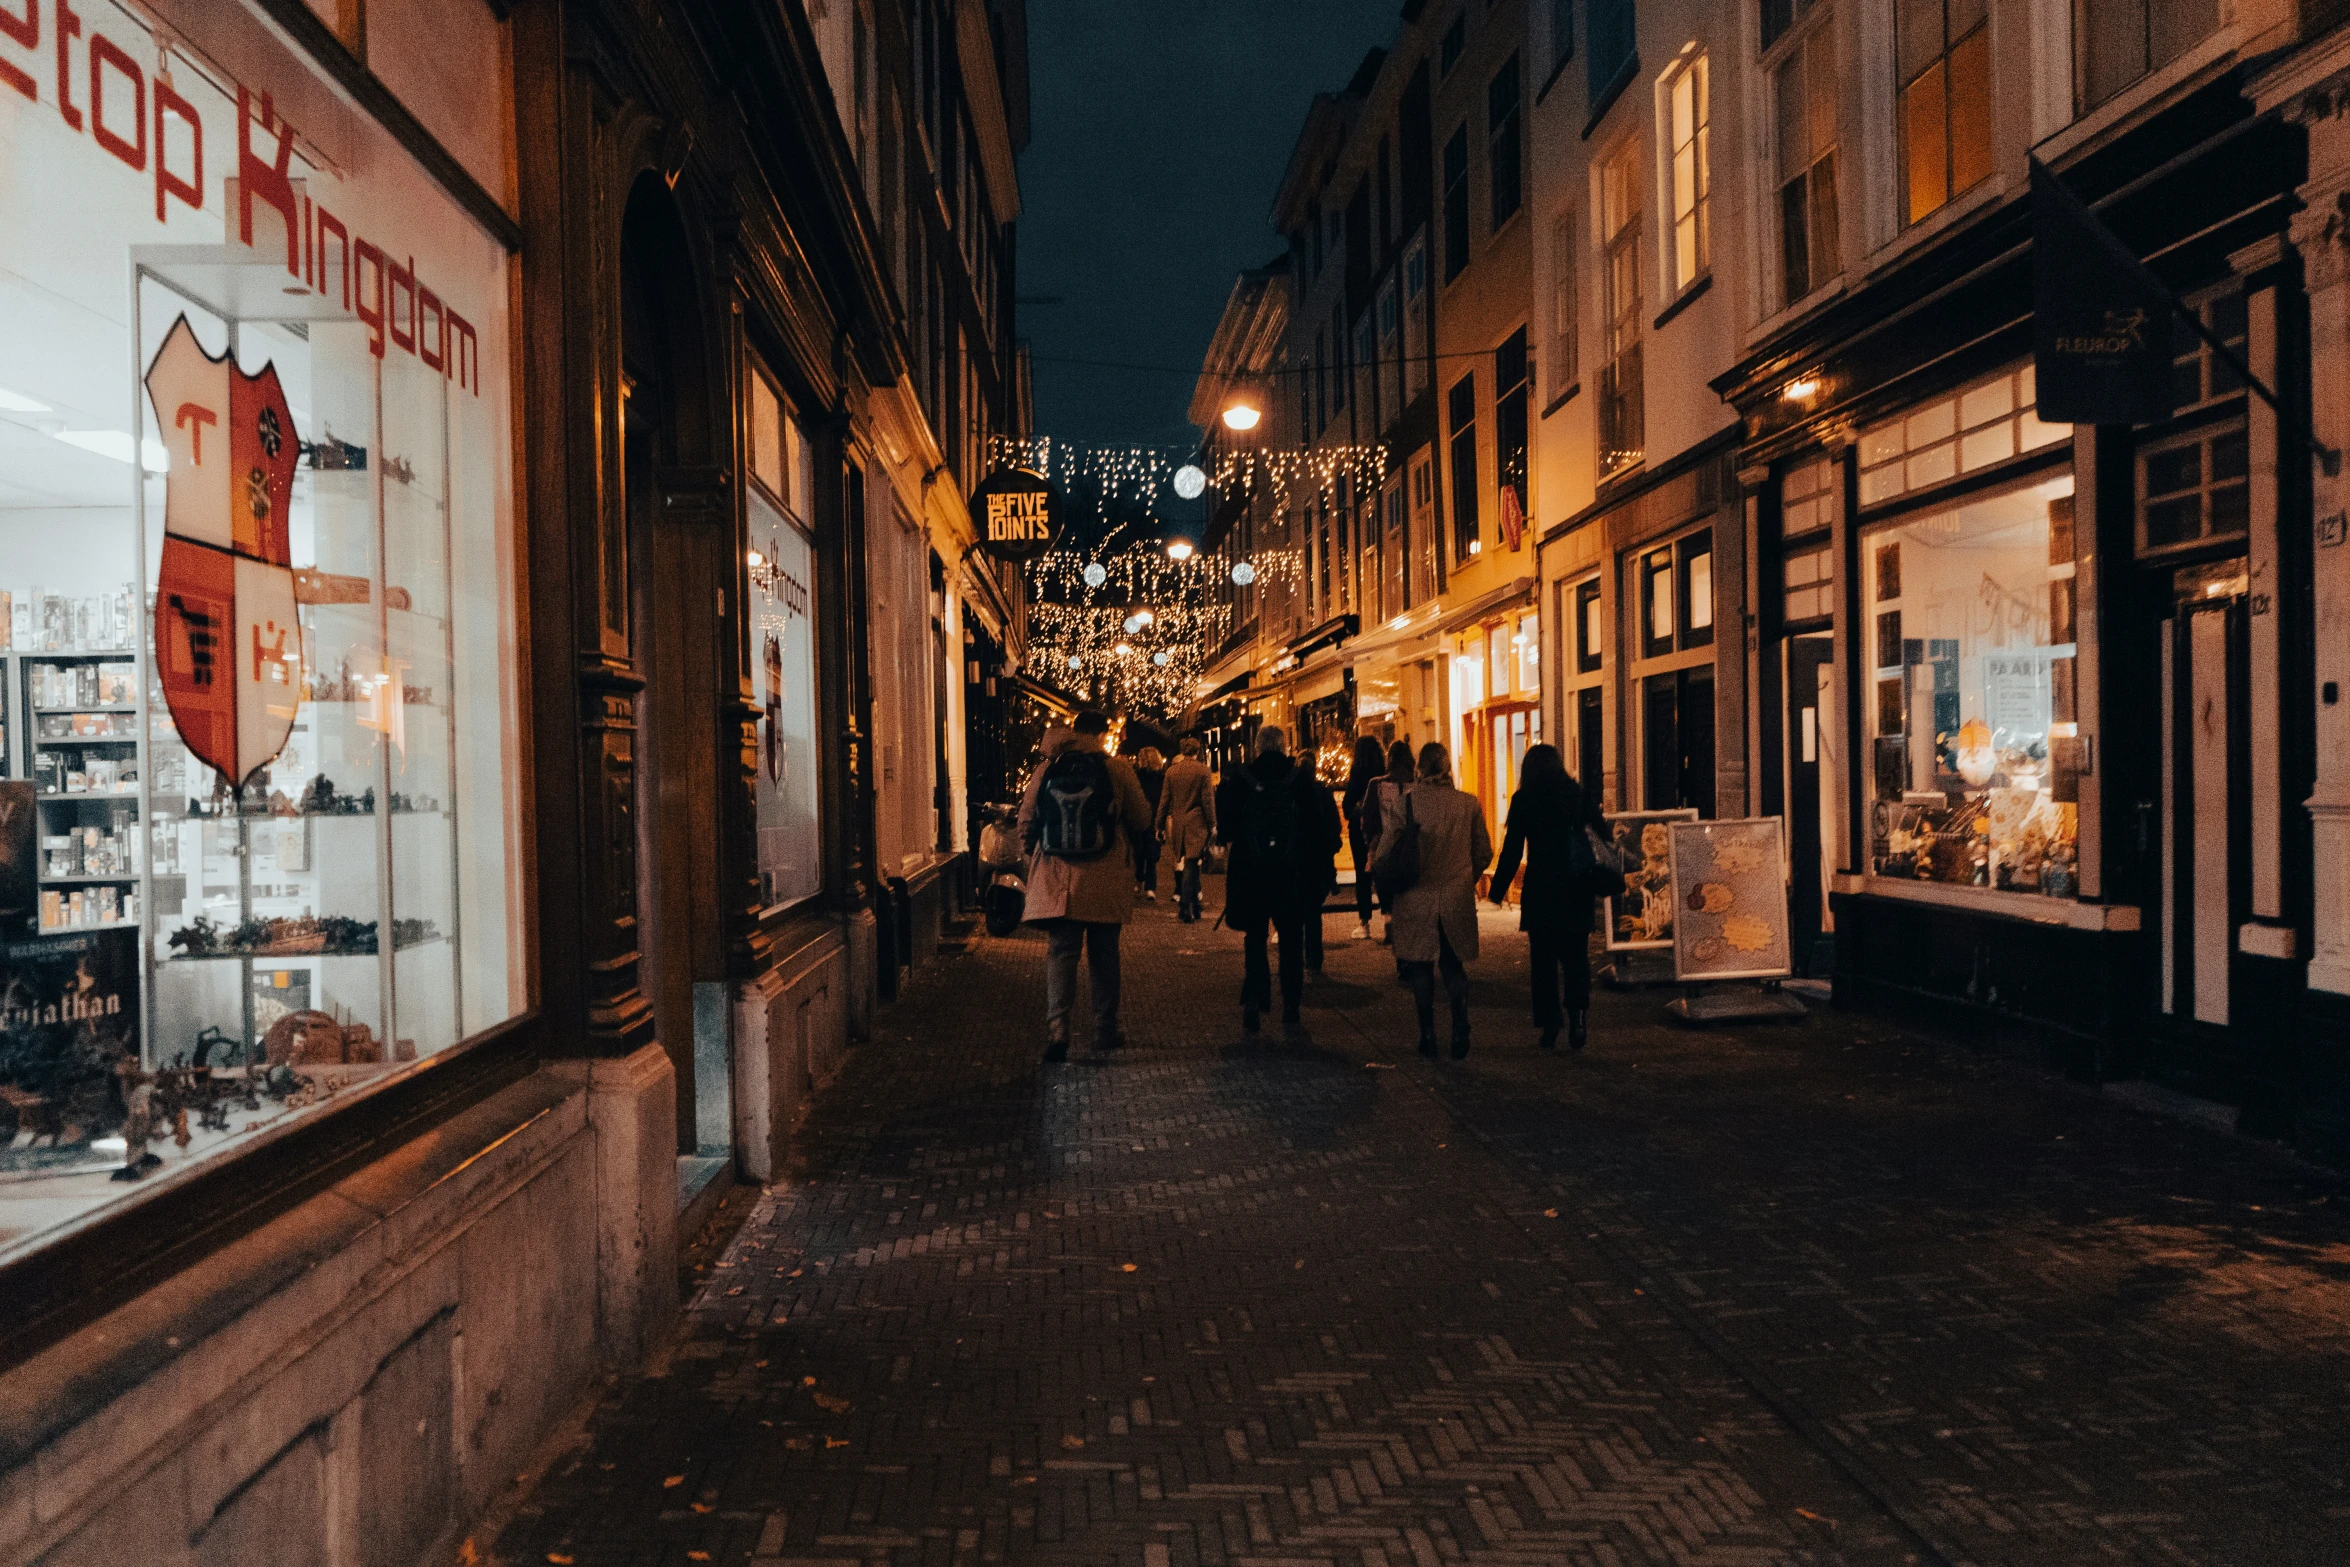 pedestrians walk along a narrow street in the evening